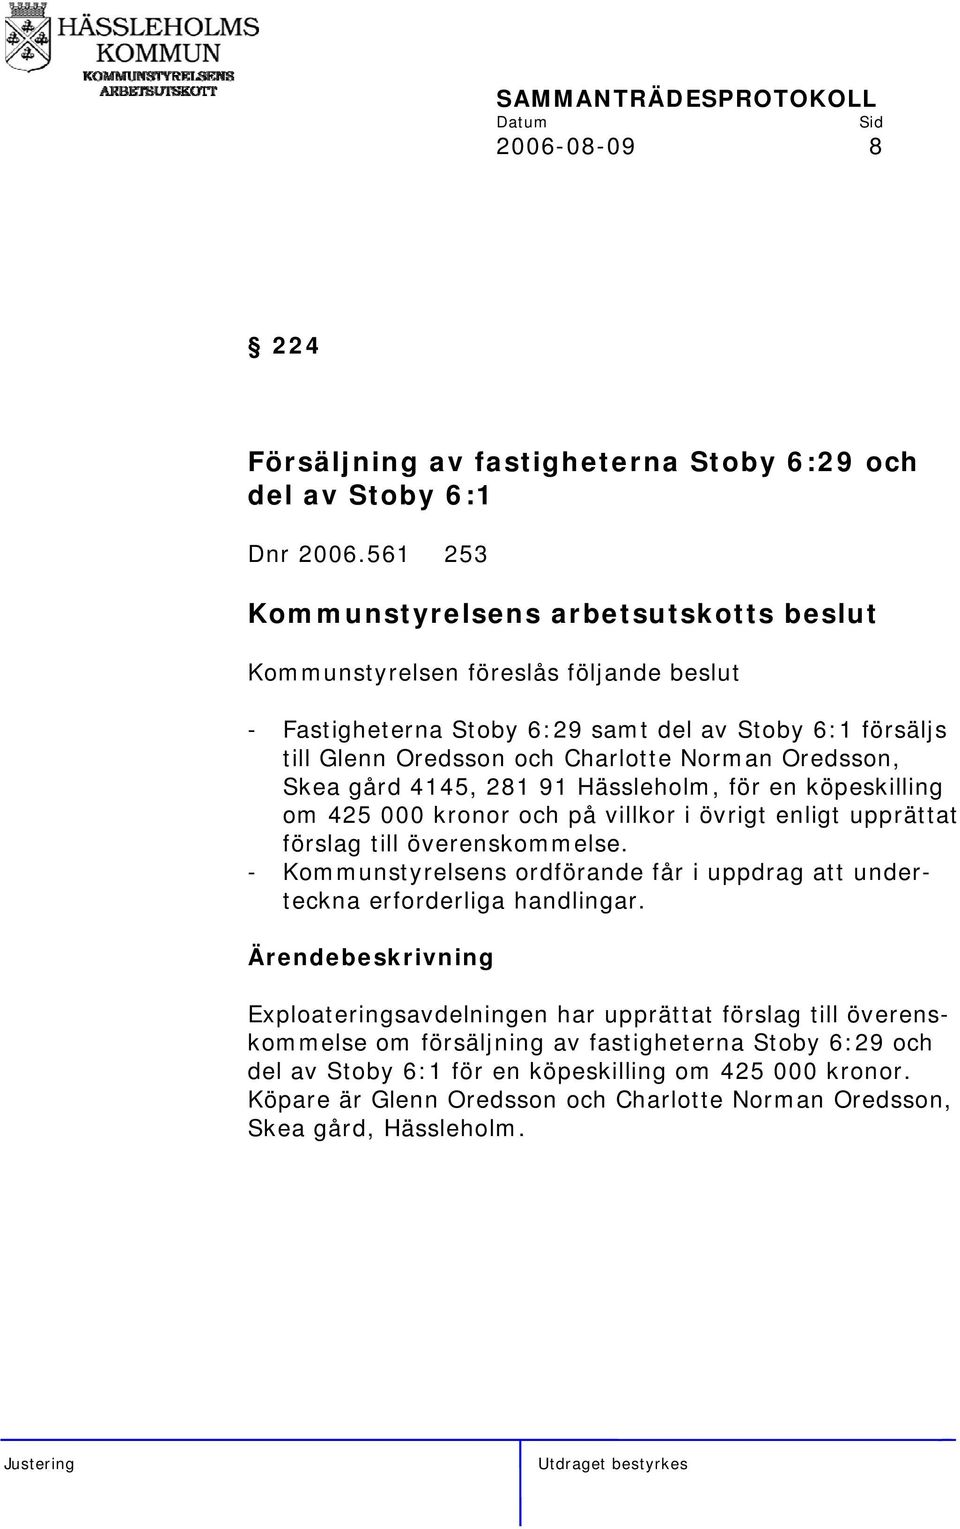 Hässleholm, för en köpeskilling om 425 000 kronor och på villkor i övrigt enligt upprättat förslag till överenskommelse.